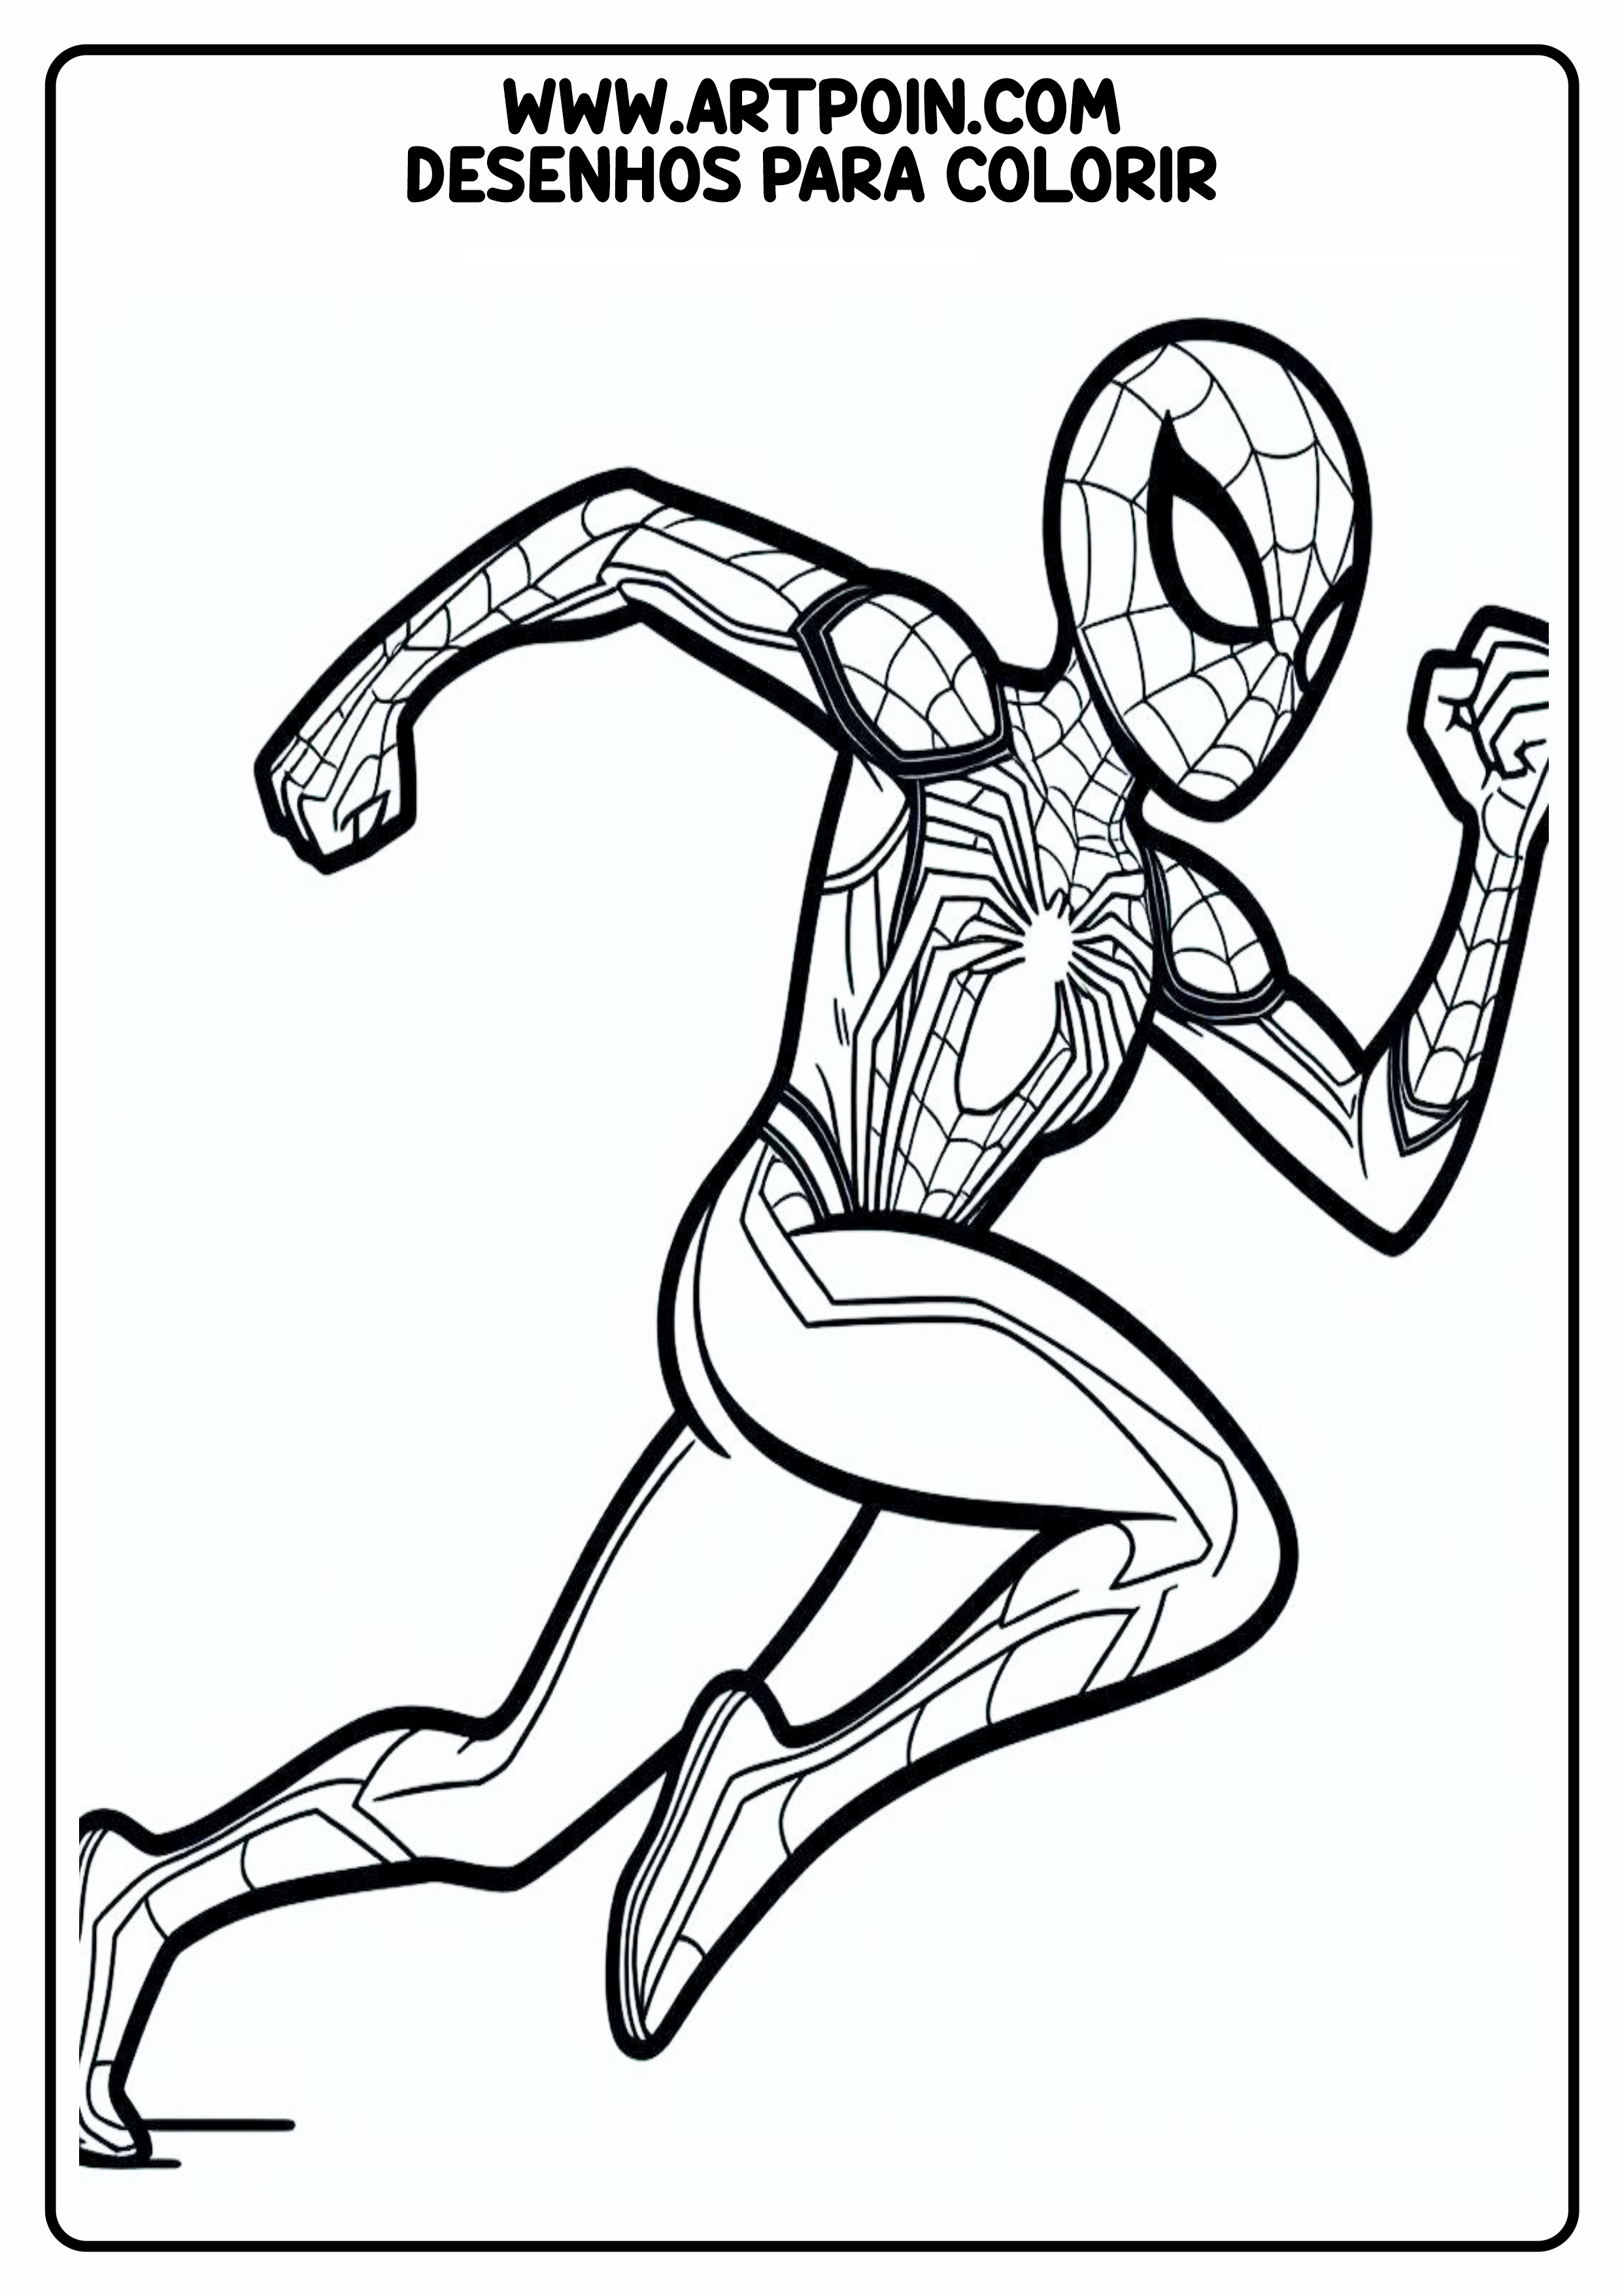 Homem-Aranha em ação desenho para colorir para imprimir super herói Marvel quadrinhos hq png